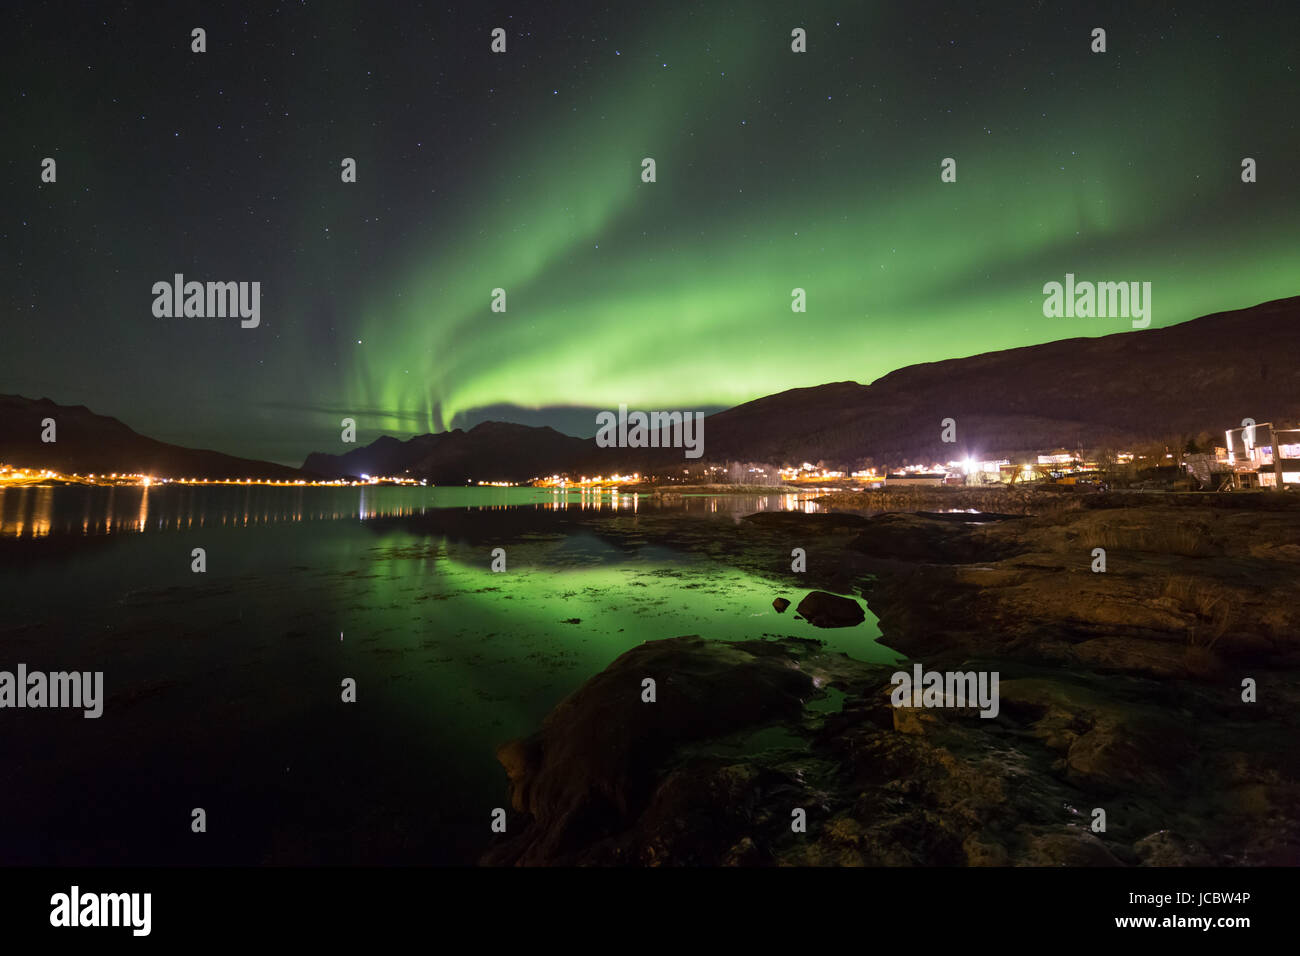 Aurora boreale o le luci del nord in movimento attraverso il cielo notturno entro il Circolo Polare Artico isola Kvaloya Troms Tromso Norvegia regione Foto Stock